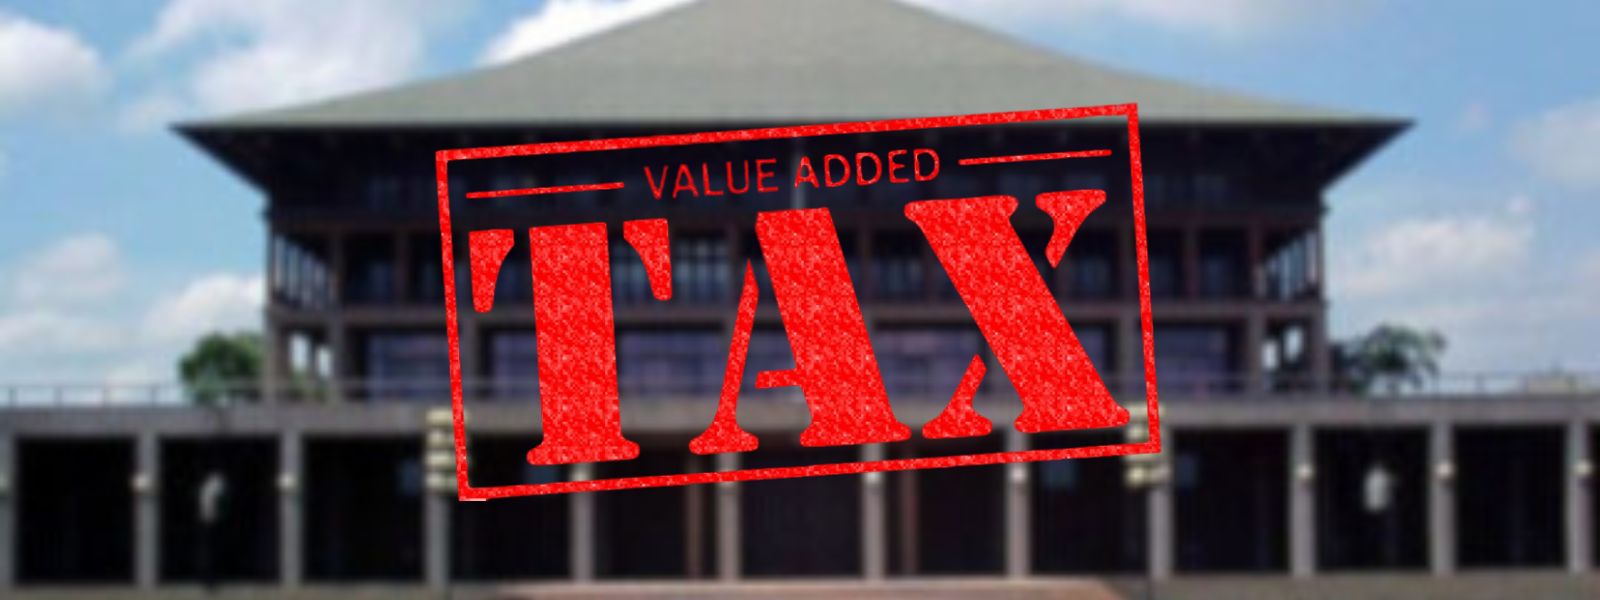 Value Added Tax (Amendment) Bill in Parliament